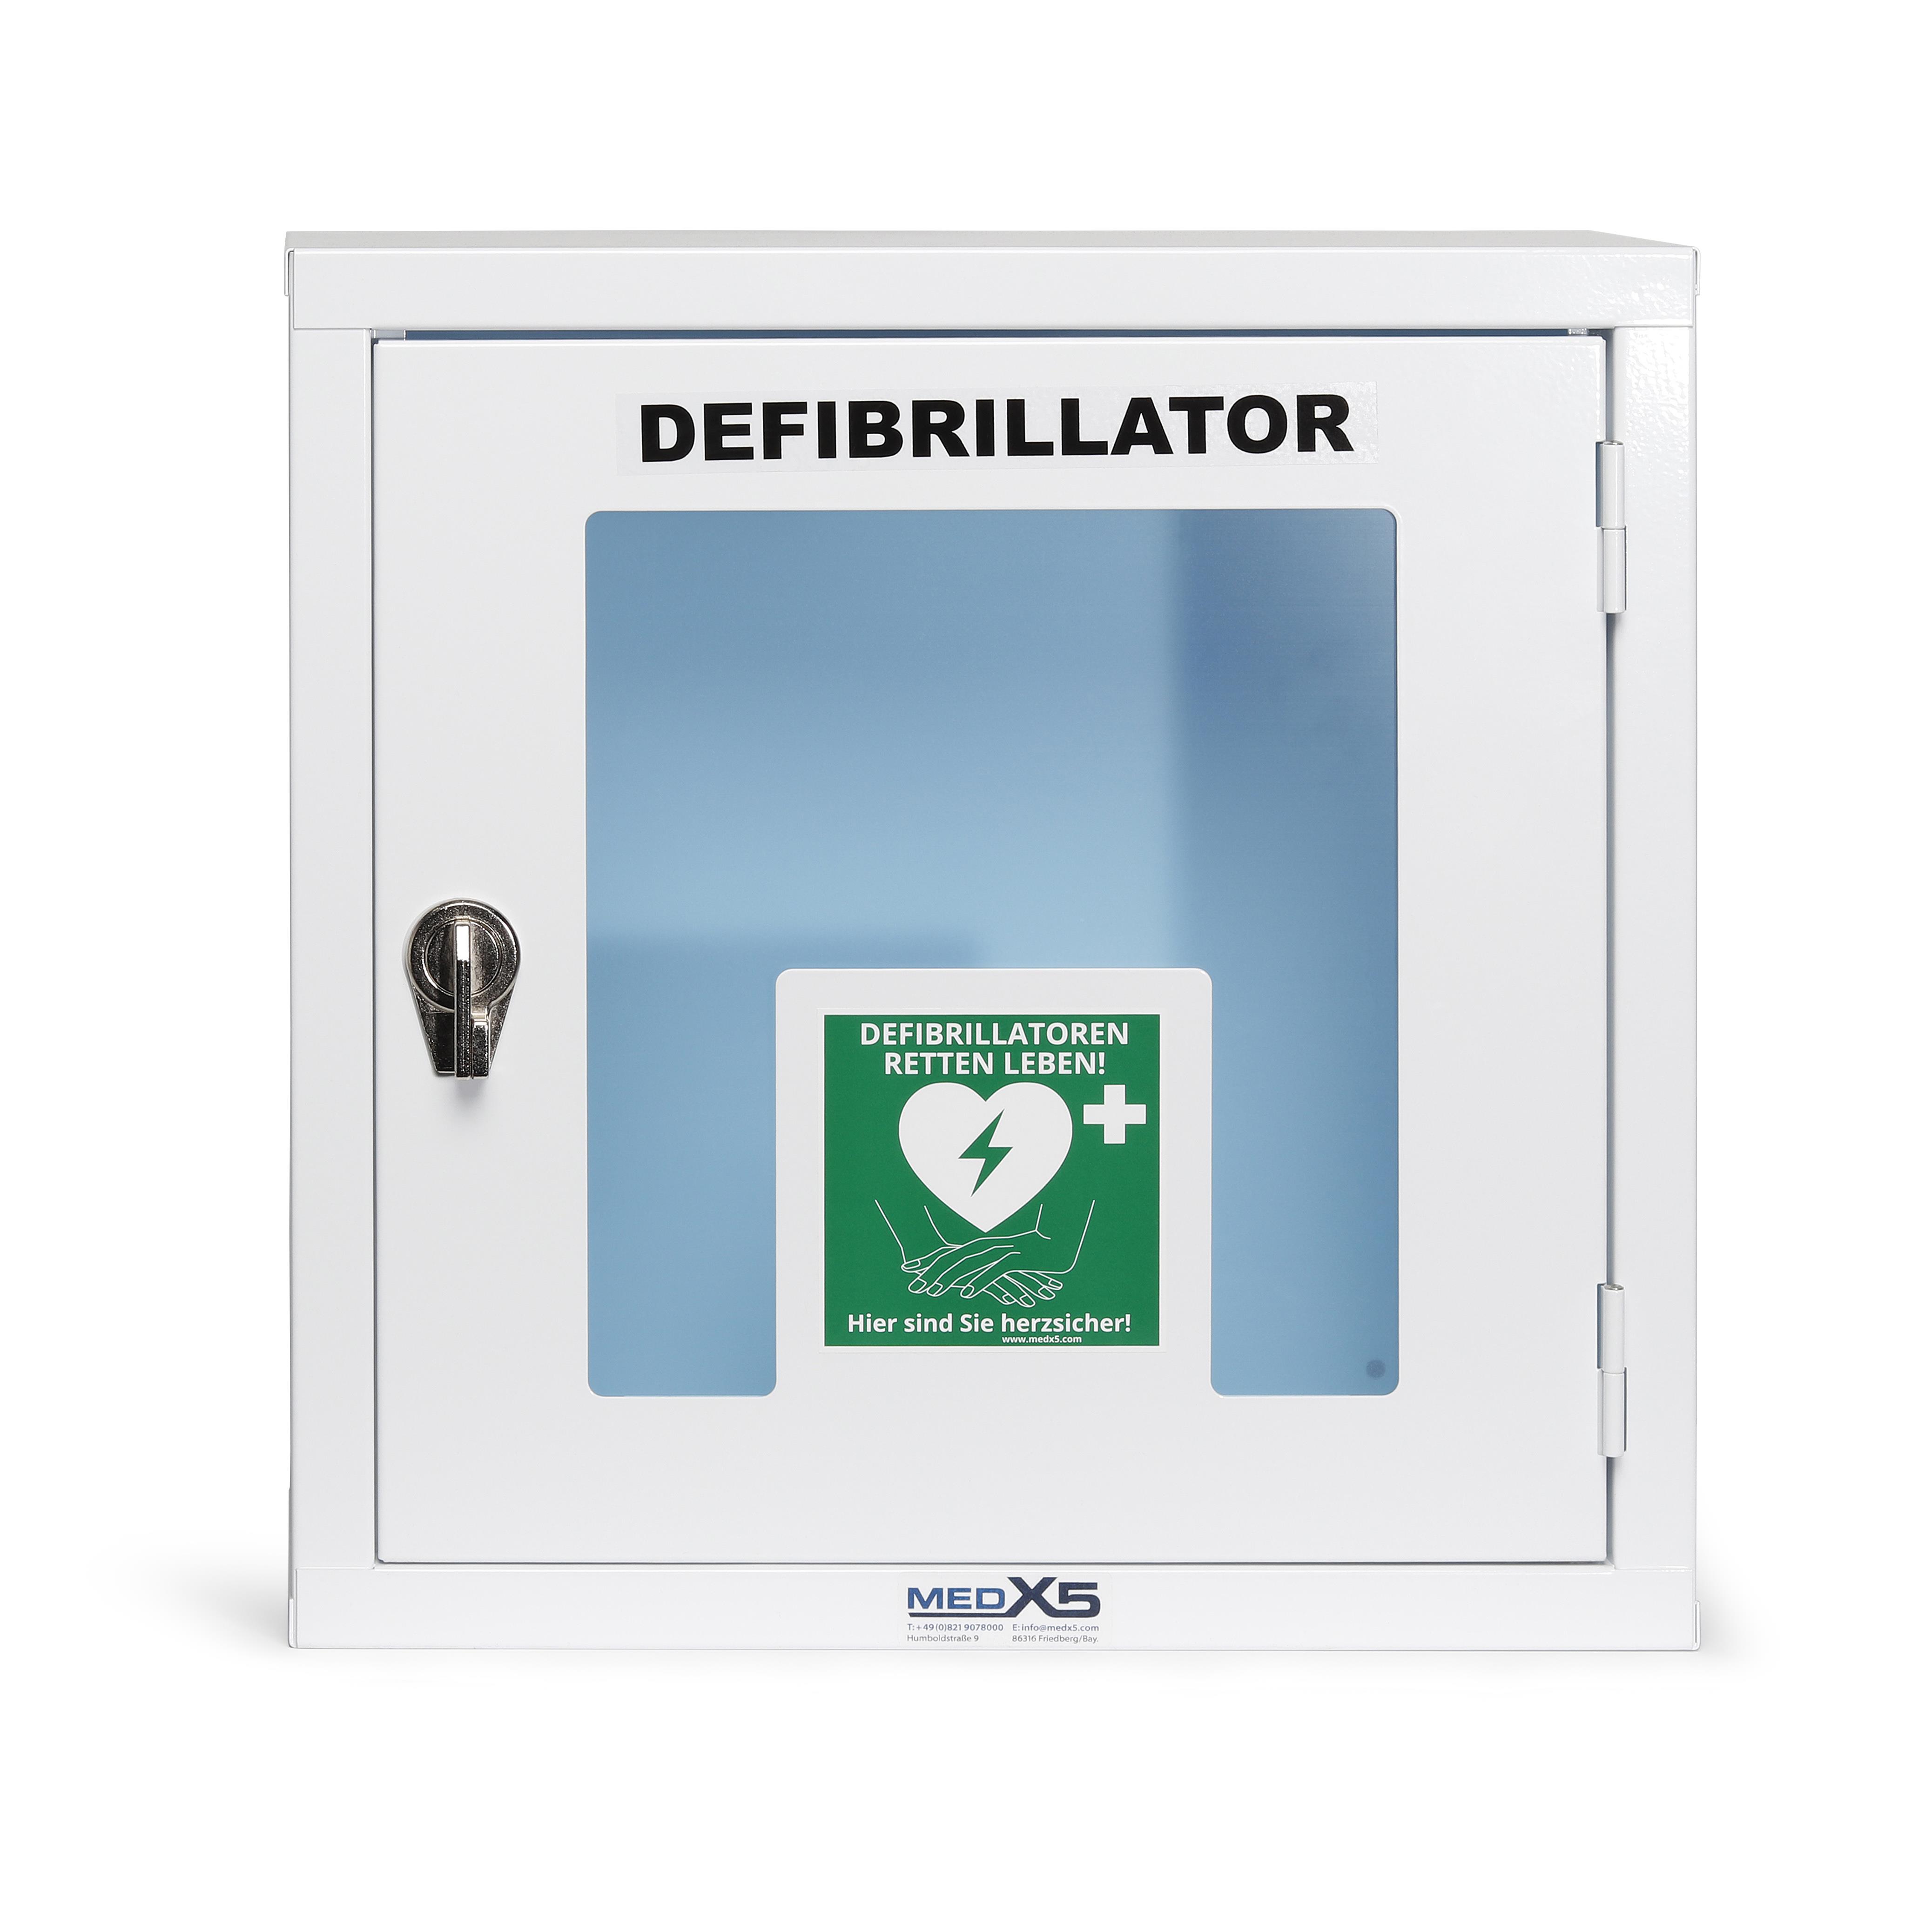 Defibrillator AED Metall-Wandkasten, innen, Universalgröße